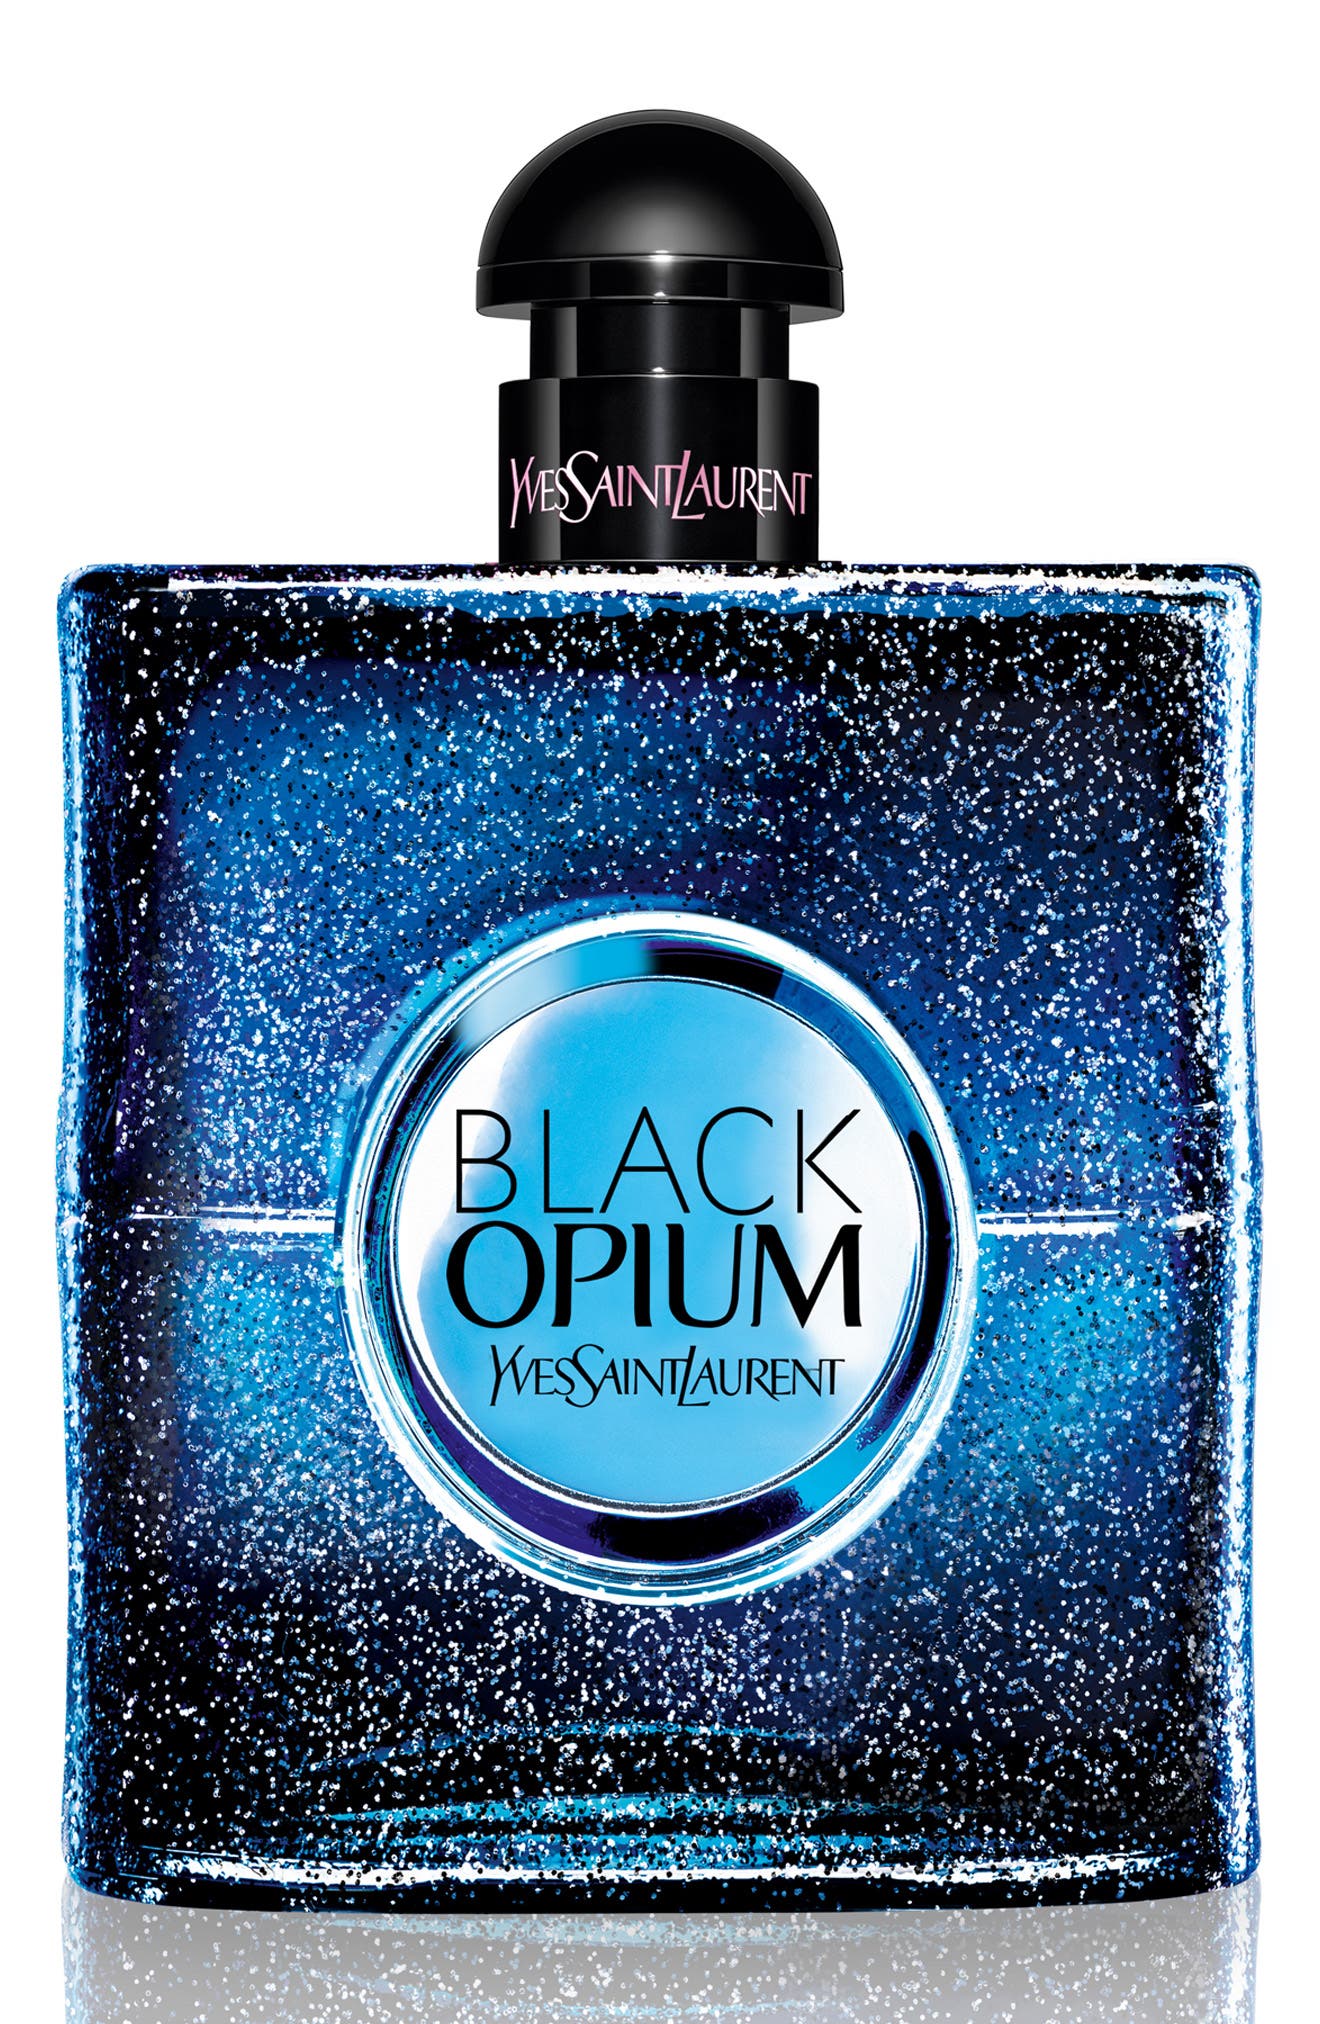 opium perfume notes